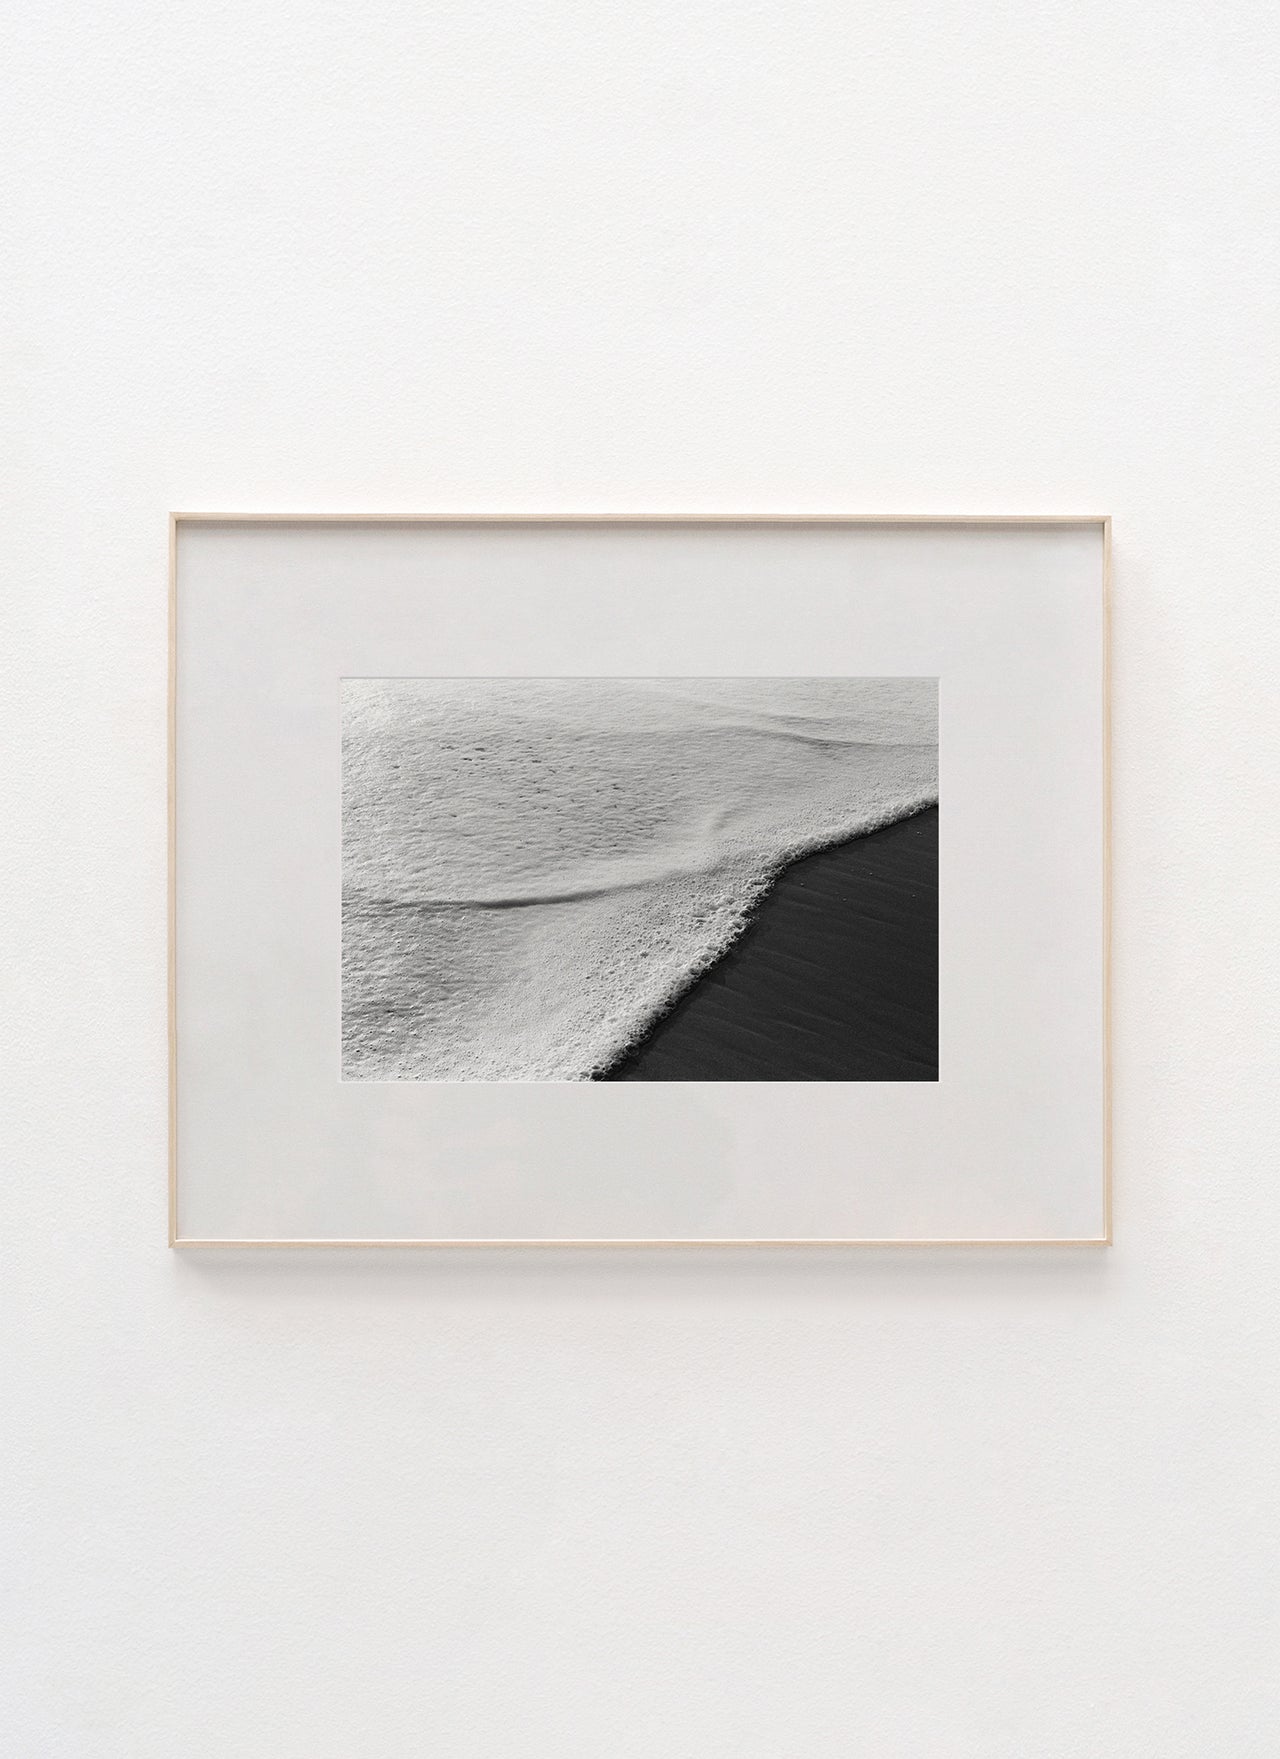 Sea Foam, Malibu – 2020 20.0 x 13.5" Archival Print - Scott West